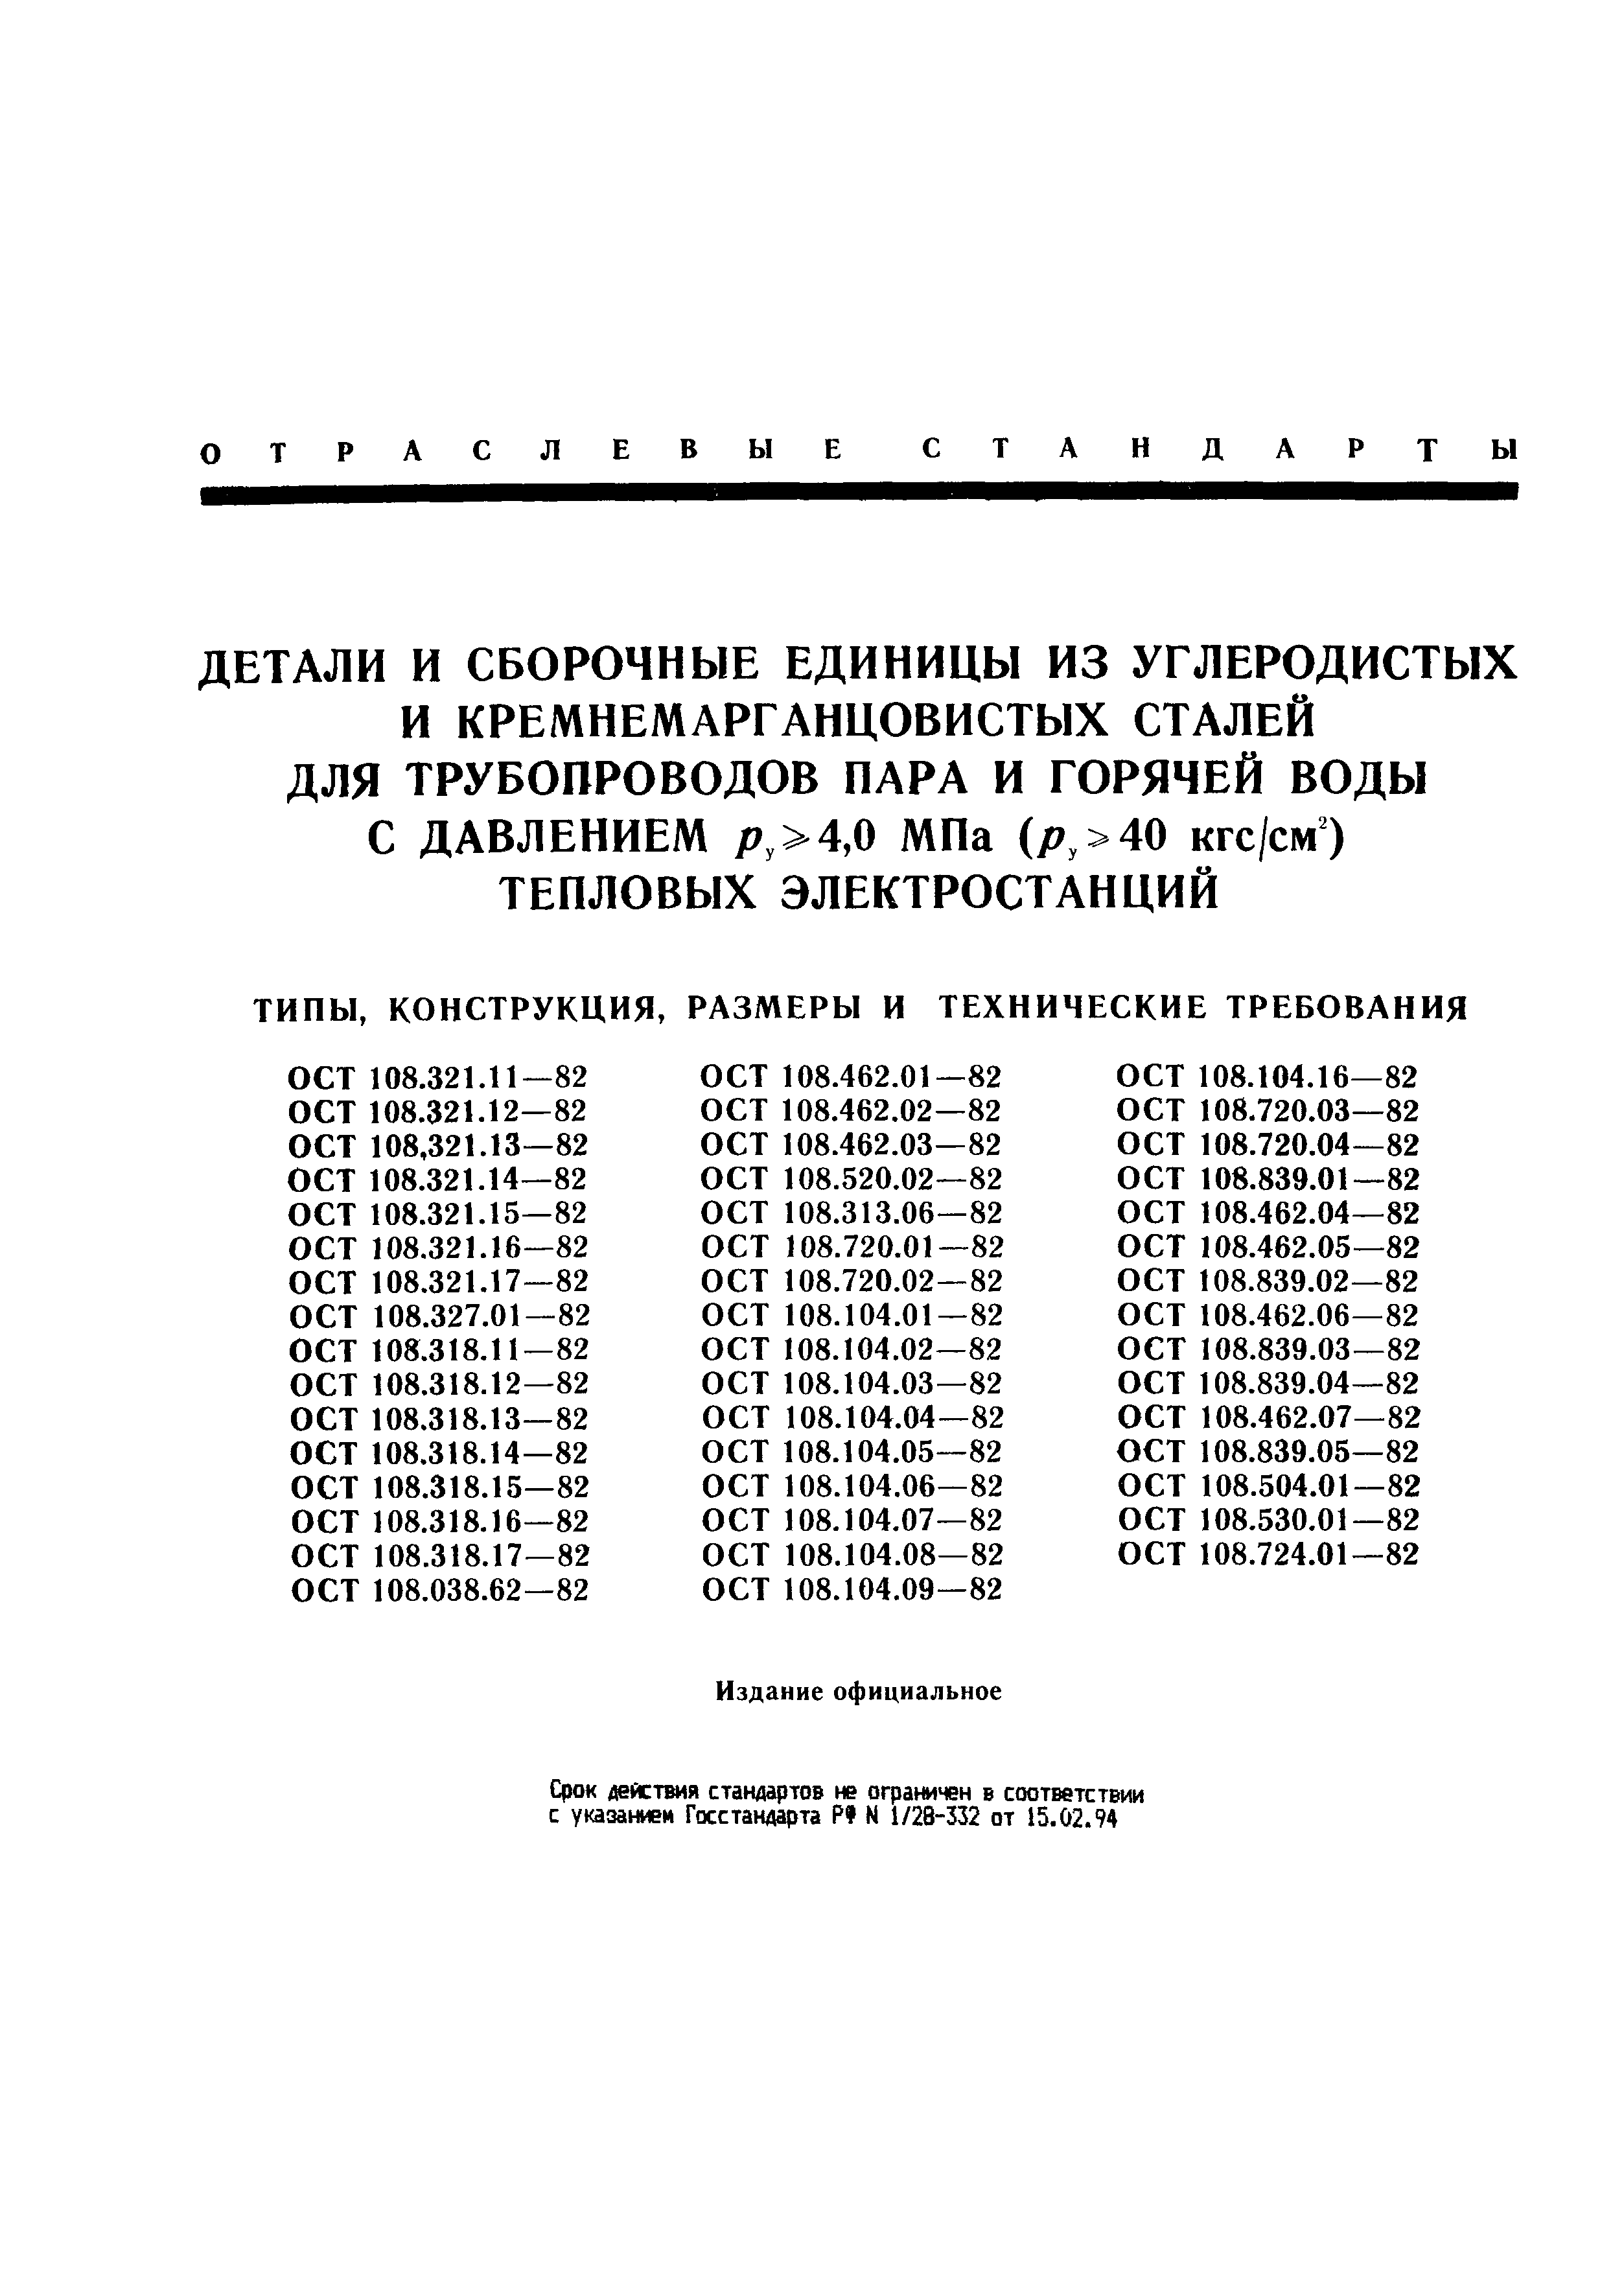 ОСТ 108.318.12-82